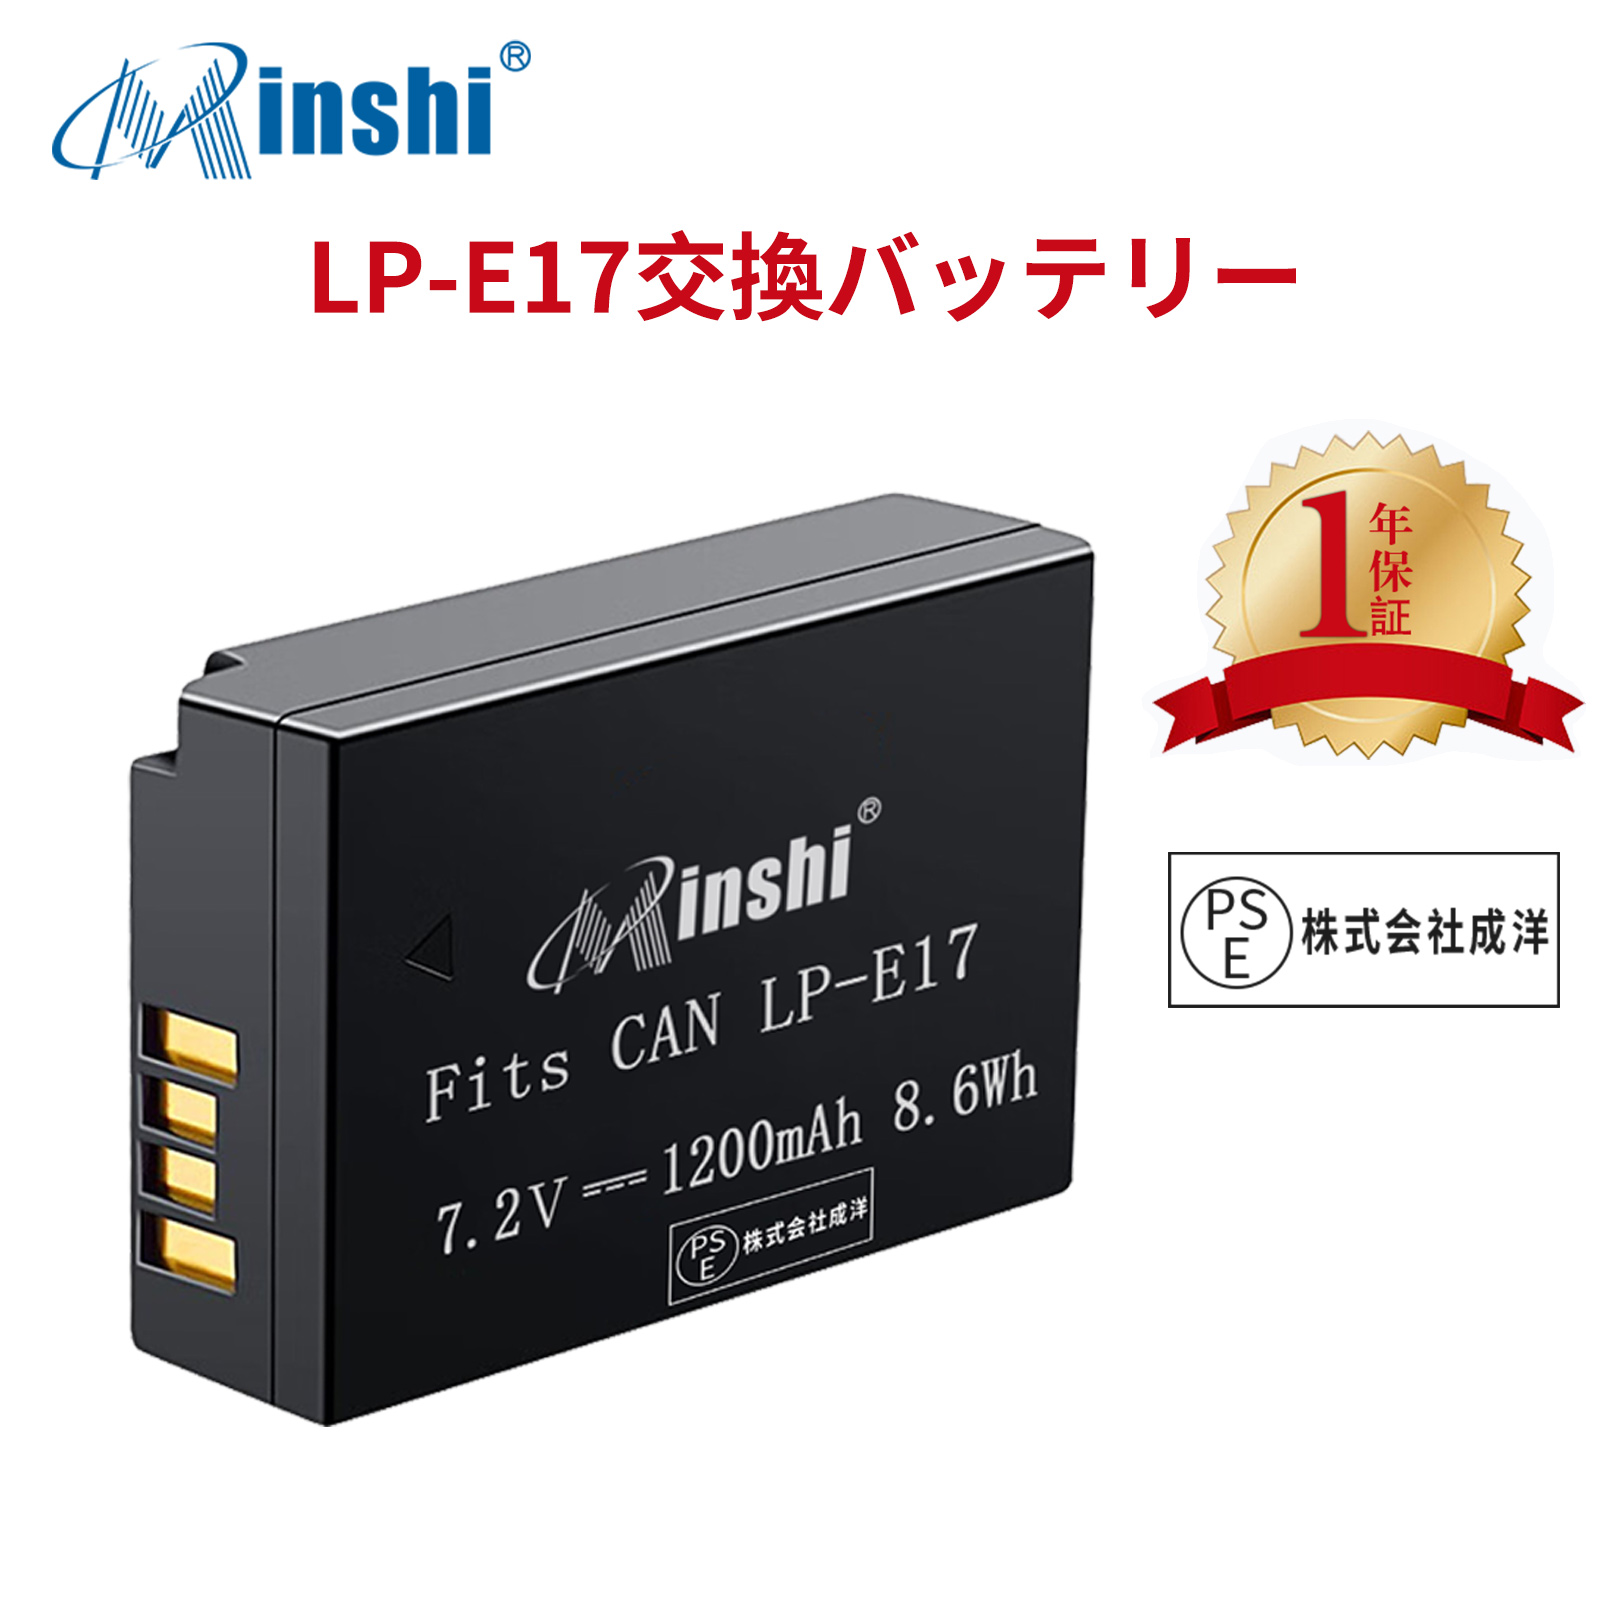 【1年保証】minshi CANON LP-E17 750D LP-E17 【1200mAh 7.2V】PSE認定済 高品質交換用バッテリー オリジナル充電器との互換性がない｜minshi